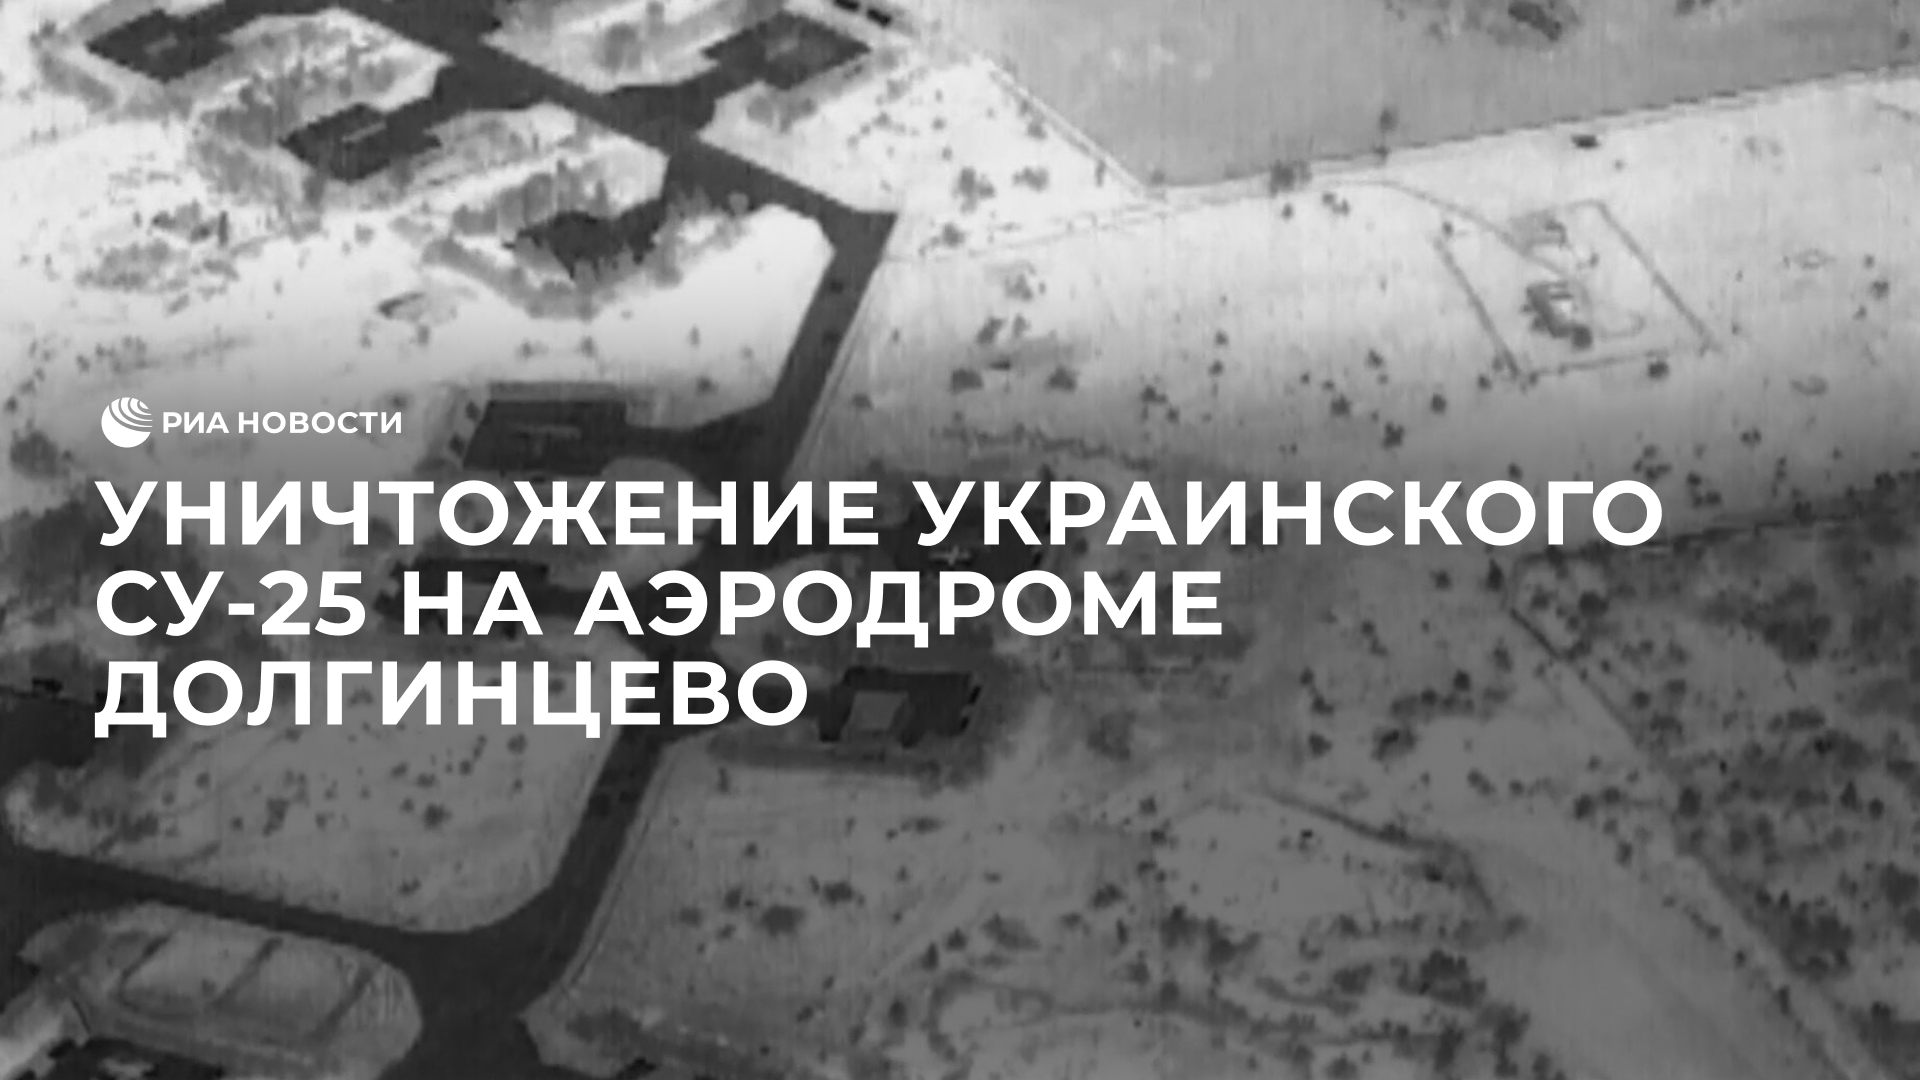 Уничтожение украинского Су-25 на аэродроме Долгинцево в Днепропетровской области